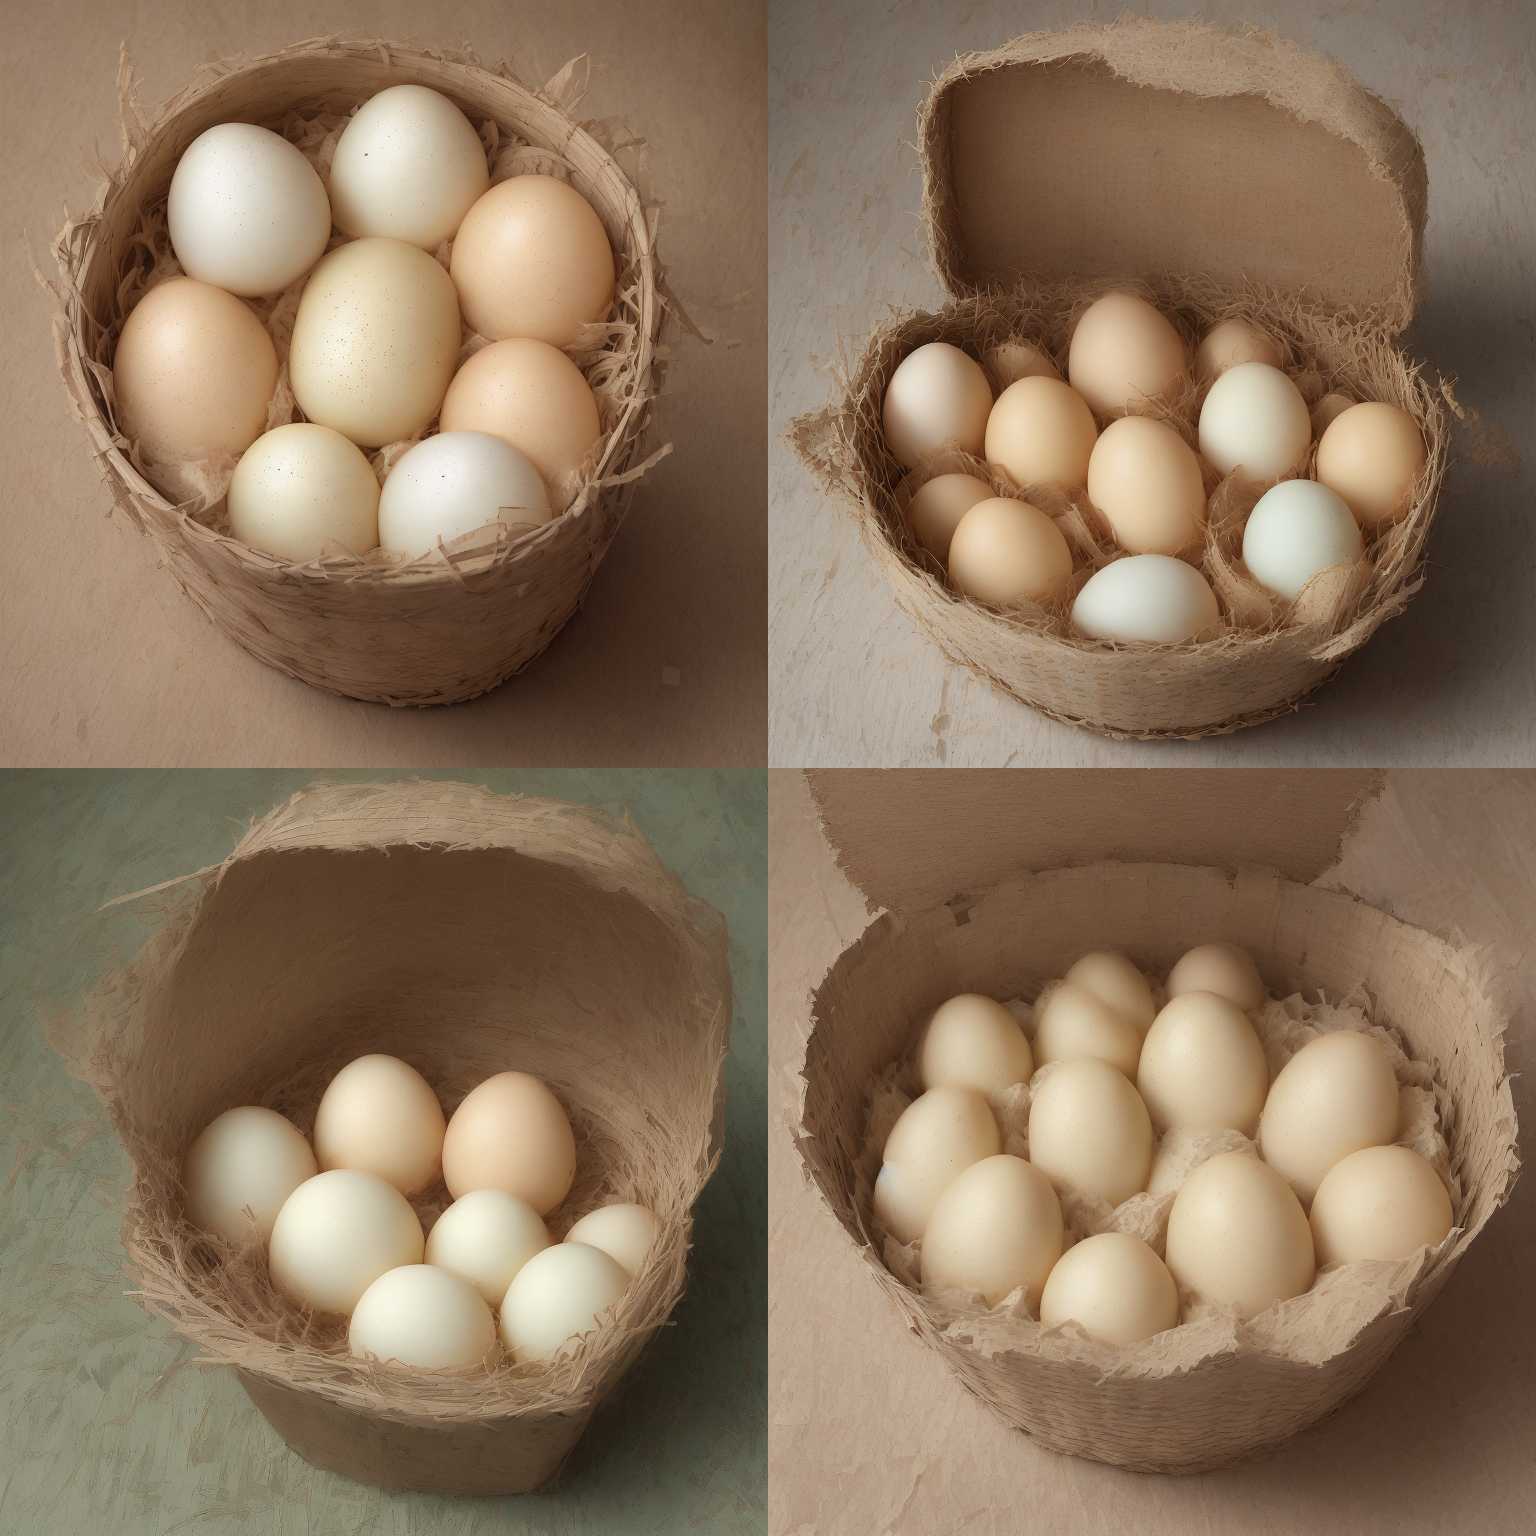 An egg in a carton